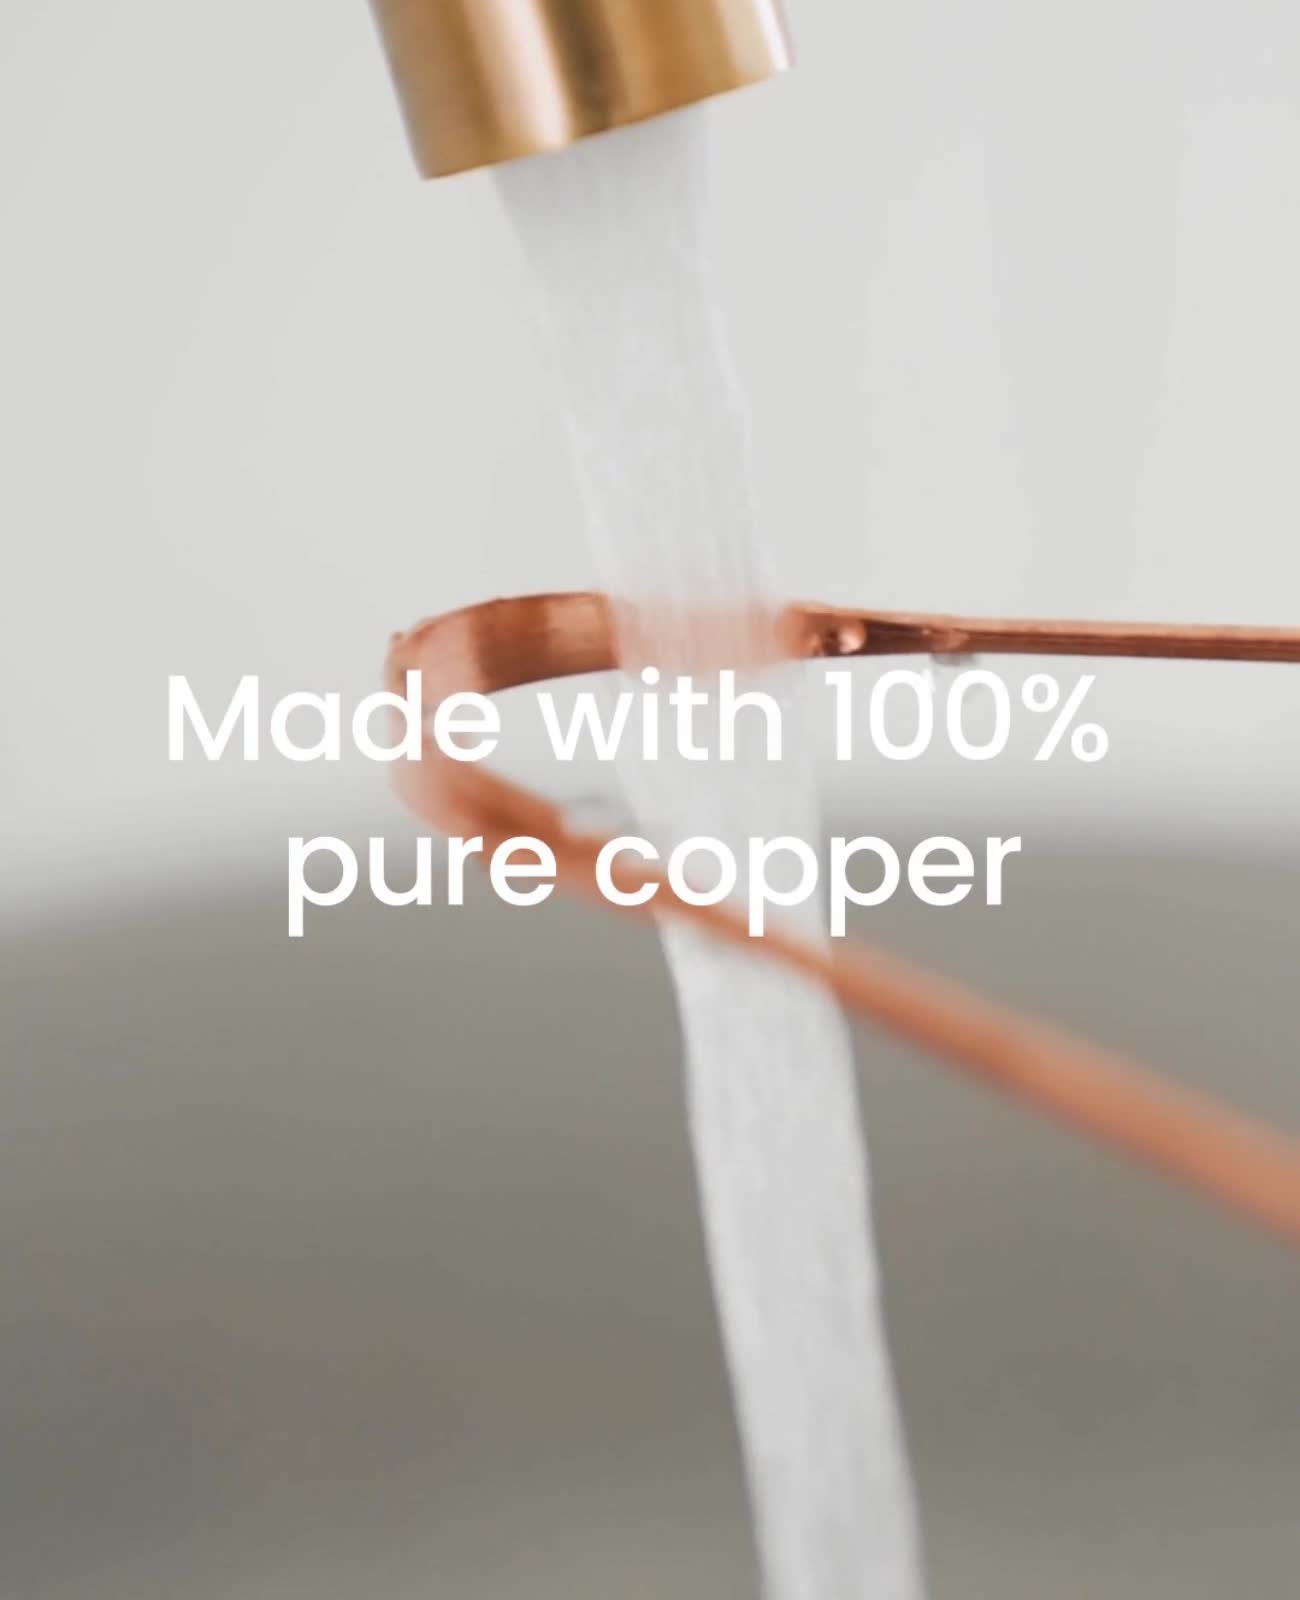 Premium Copper Tongue Cleaner